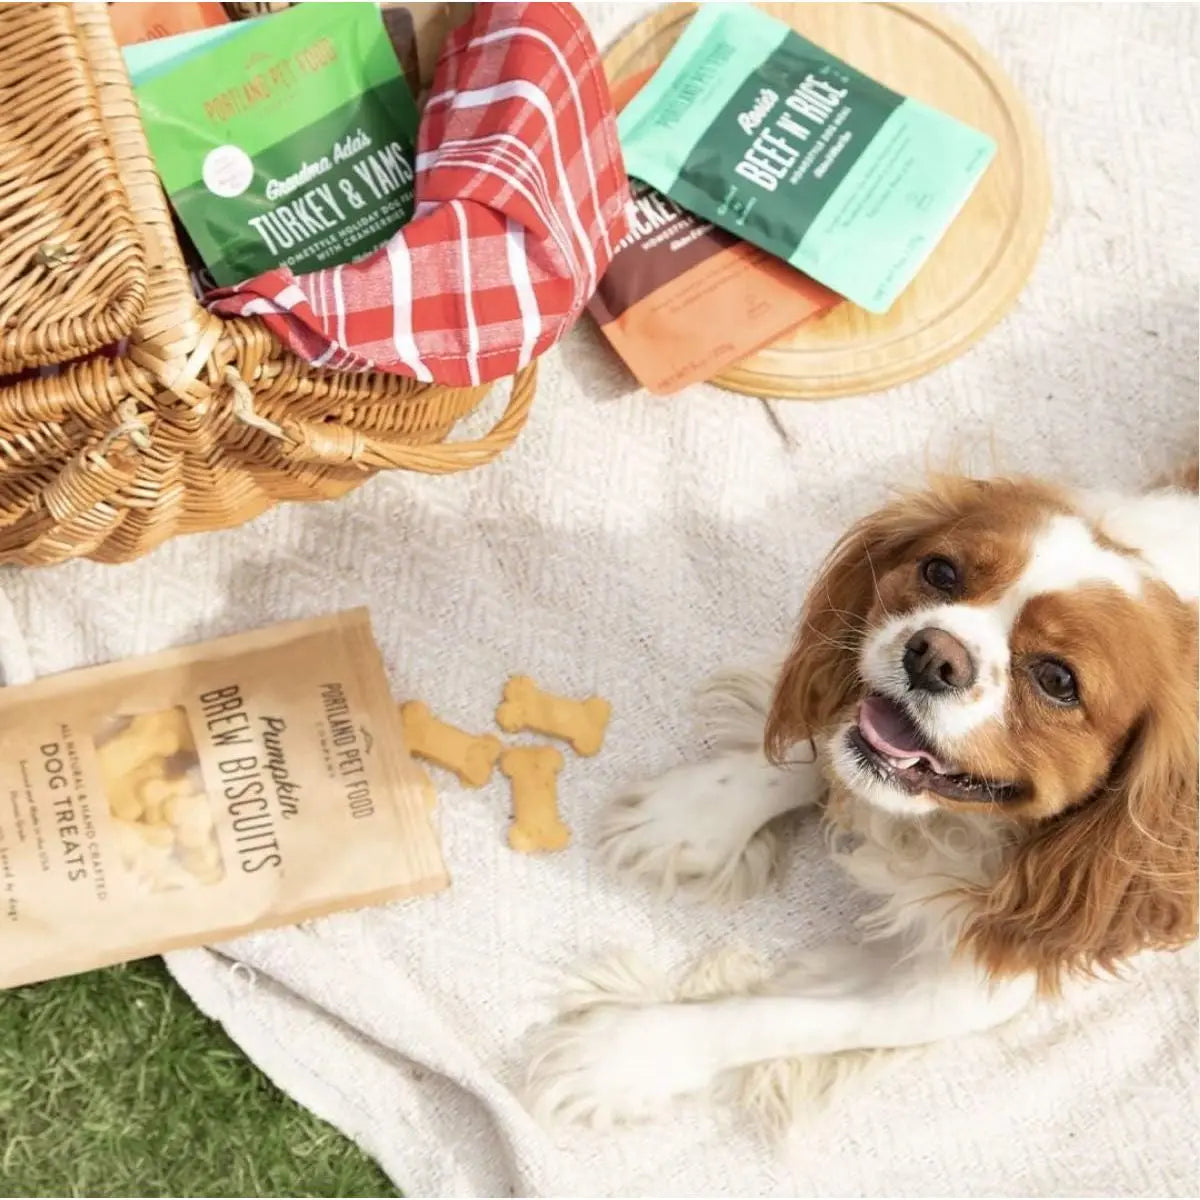 Portland Pet Food Company Pumpkin Brew Biscuits Dog Treats 5oz Portland Pet Food